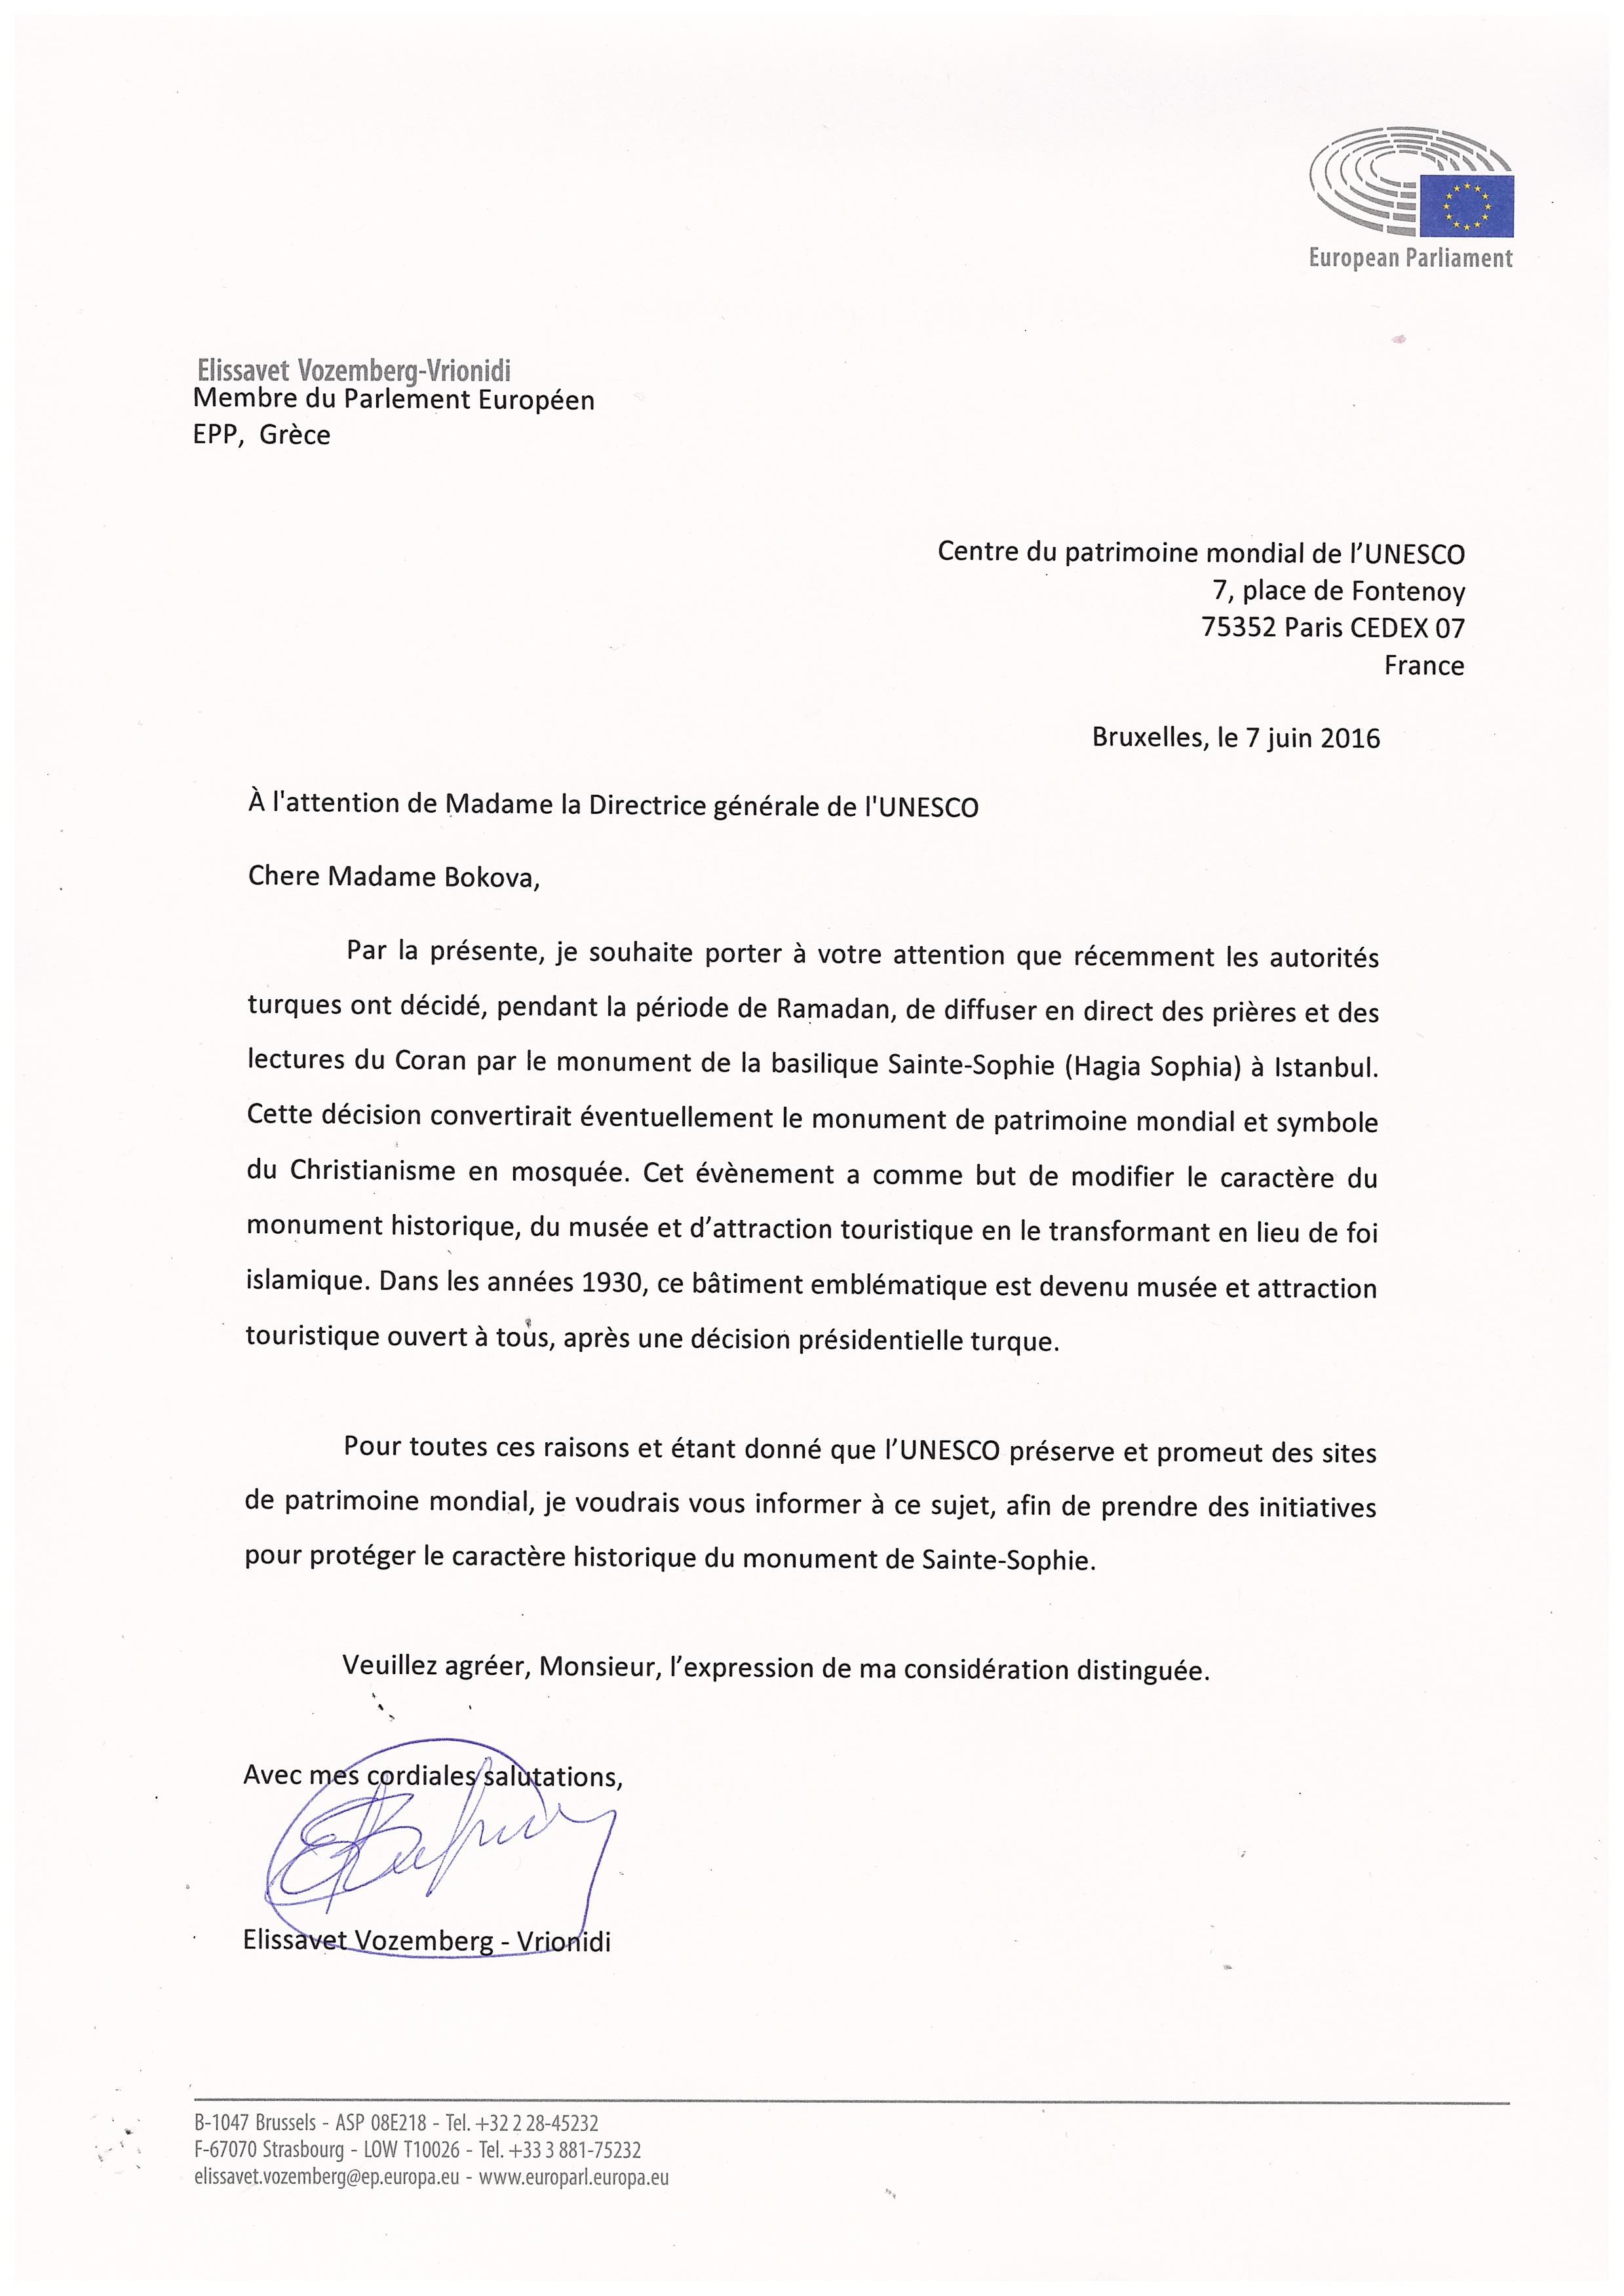 Επιστολή Ελίζας Βόζεμπεργκ προς UNESCO για την Αγιά Σοφιά